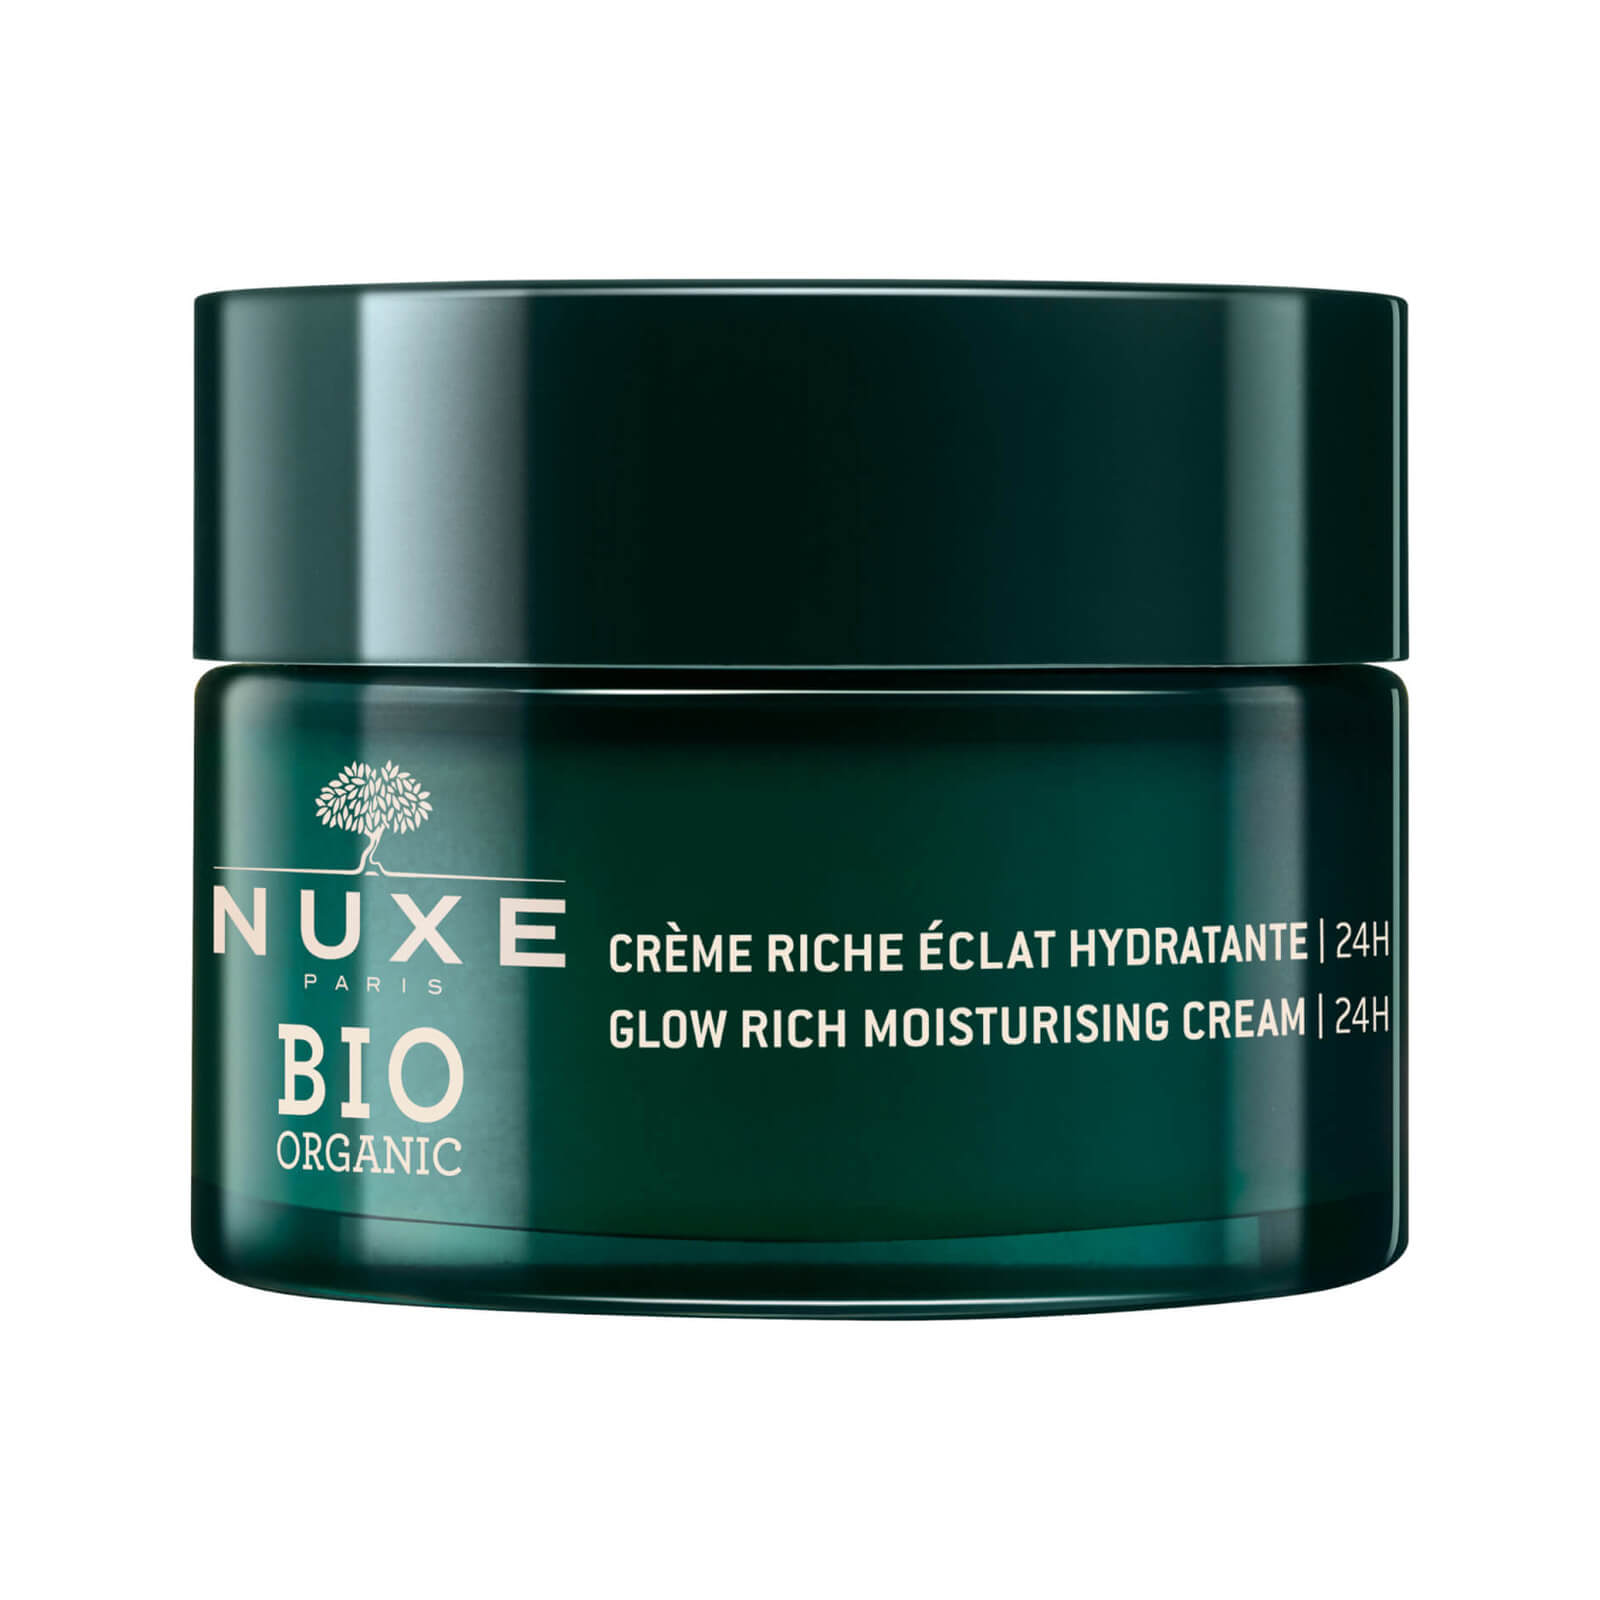 Nuxe Glow Rich Moisturizing Cream 24H 50ml, Nuxe Bio